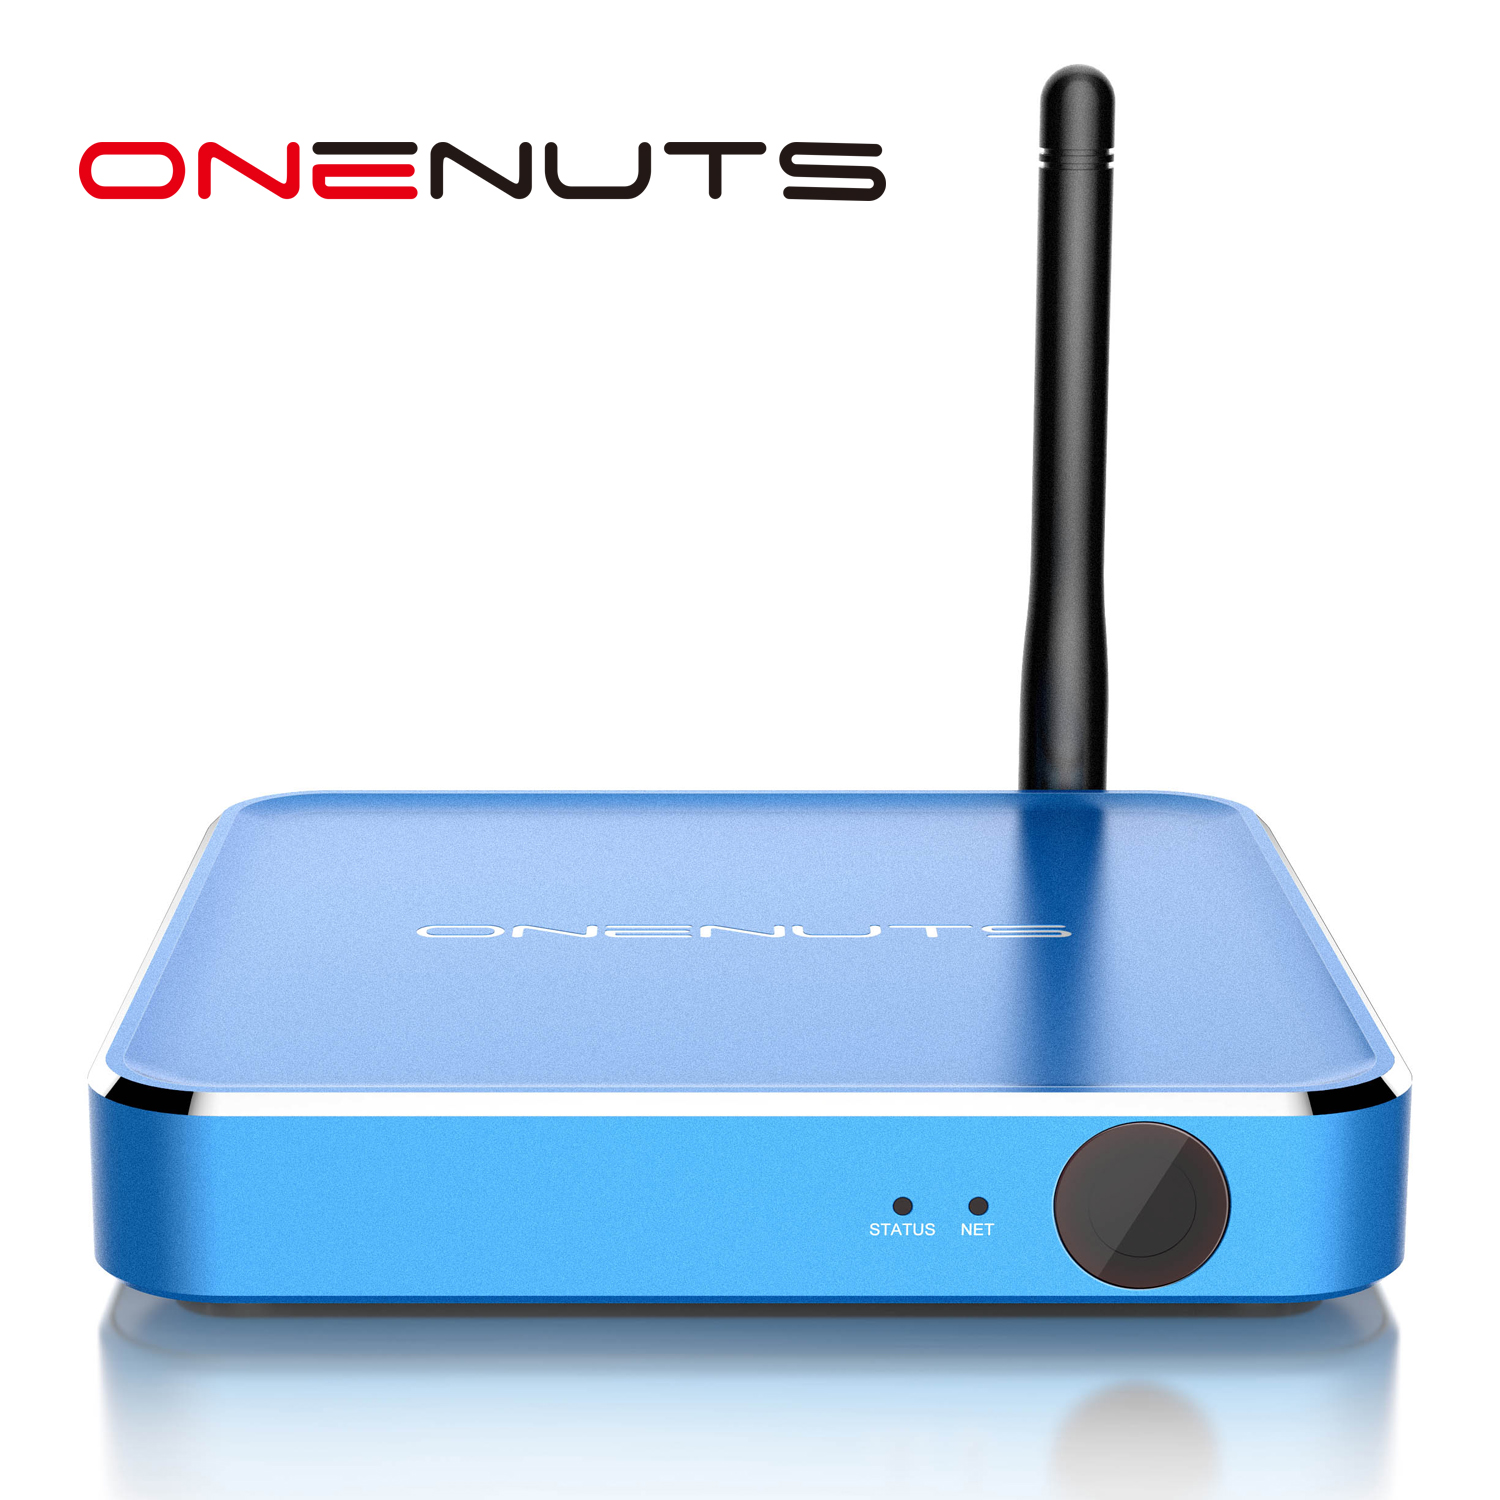 2-in-1 Octa-Core-Streaming-Mediaplayer & Spiel Android TV-Box mit Android 6.0 Marshmallow 2G DDR3 16G eMMC Dual-Band-AC WIFI-Unterstützung von KODI YouTube Netflix Facebook und vielen mehr - Onenuts Nut 1 Blue